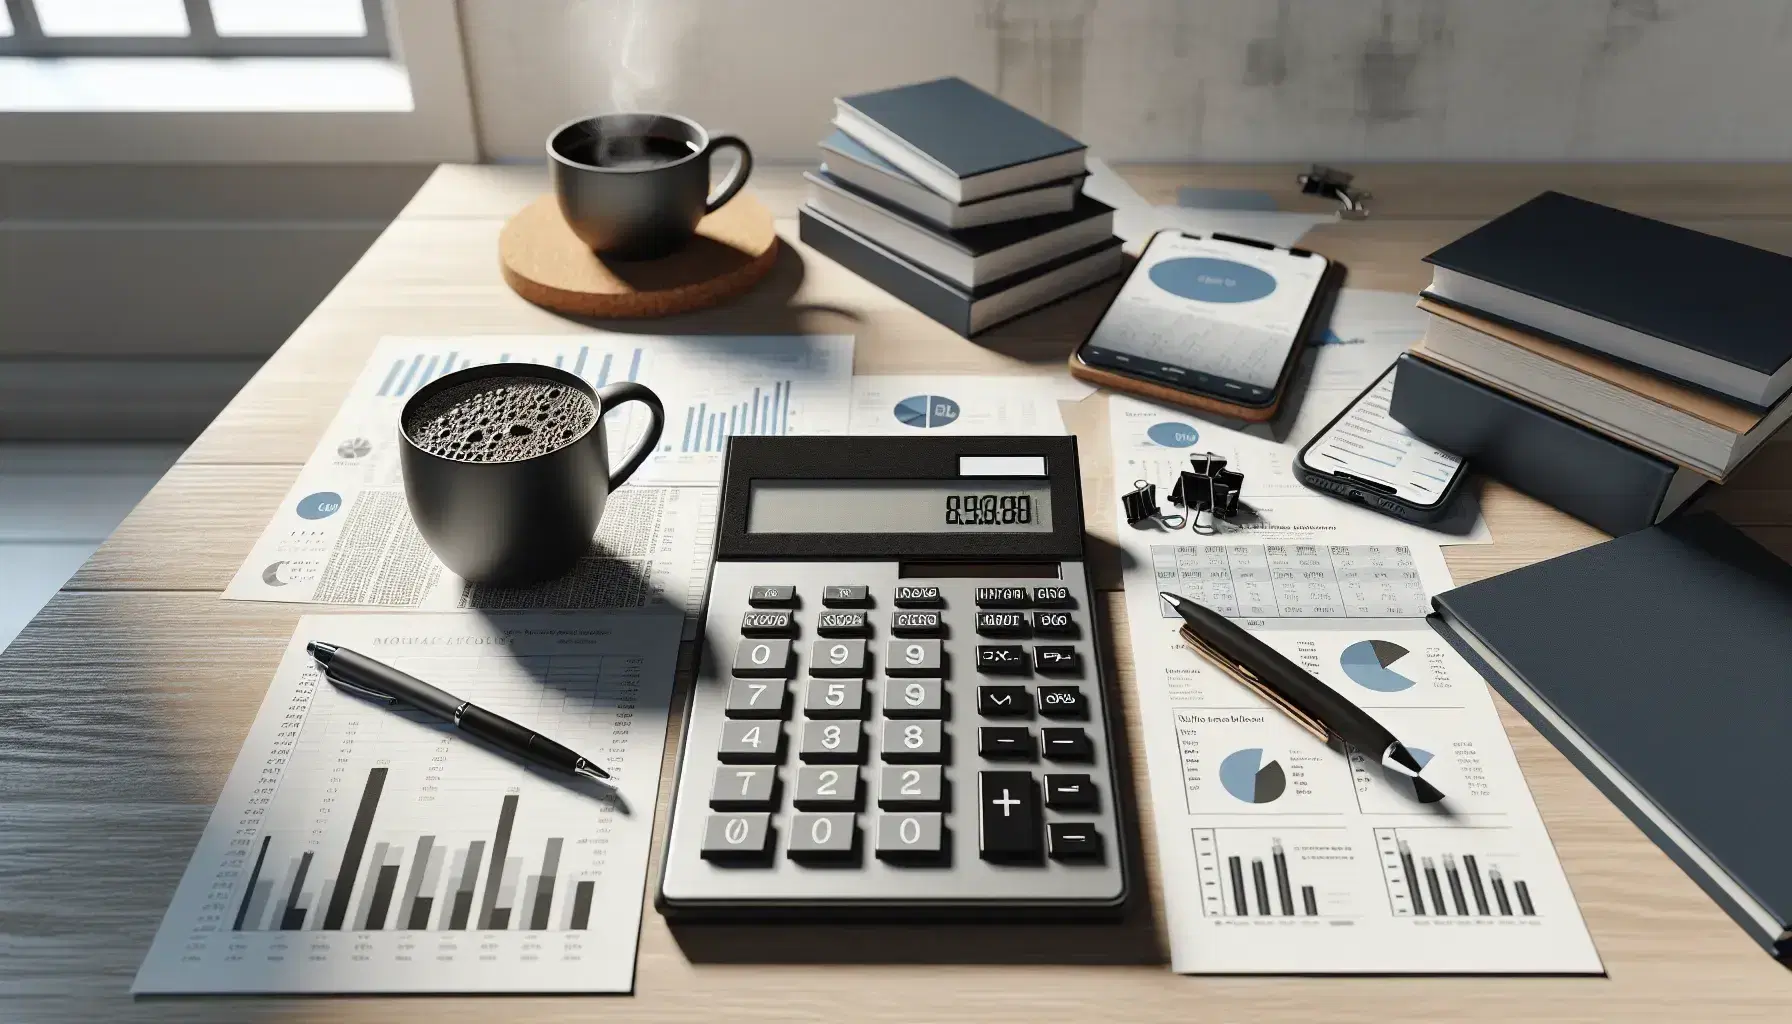 Escritorio de oficina con calculadora, papeles con gráficos financieros, portapapeles, bolígrafo azul, smartphone y taza de café, en ambiente laboral iluminado naturalmente.